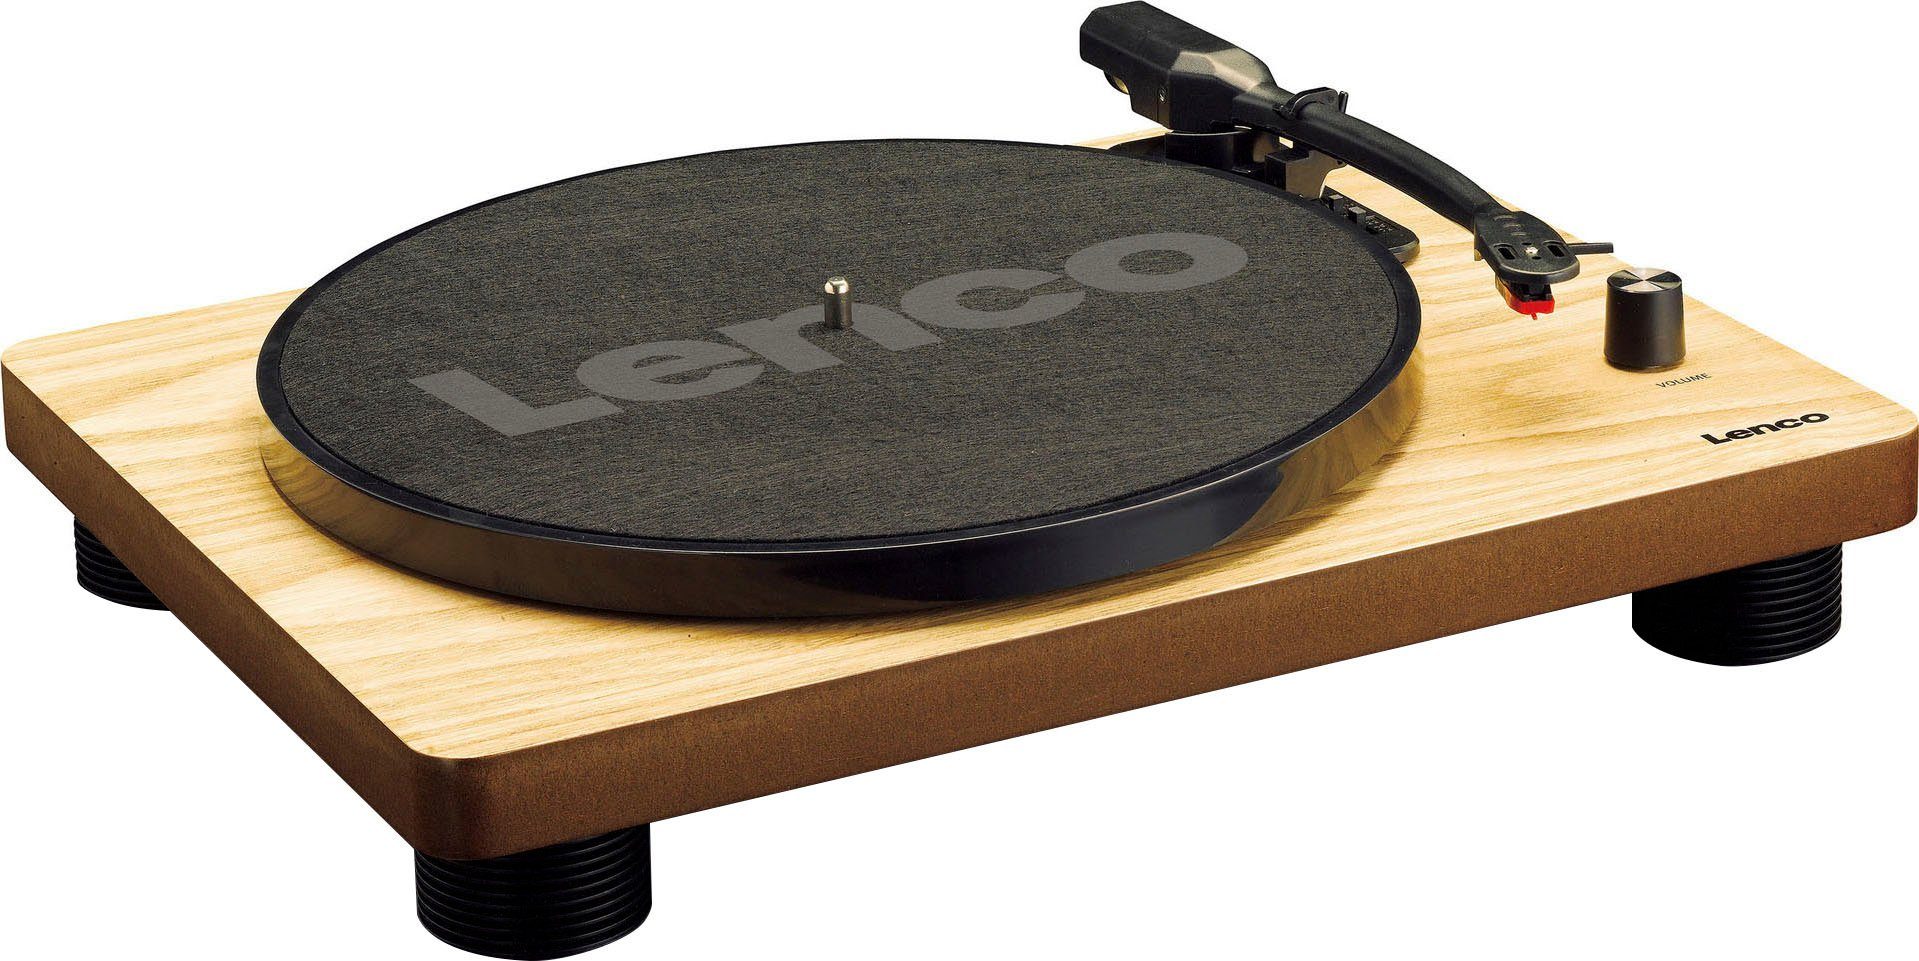 Lenco LS-50WD Plattenspieler mit int. Lautsprechern Plattenspieler ( Riemenantrieb), Einfach zu verwenden, dank der 2 eingebauten Lautsprecher  und Verstärker